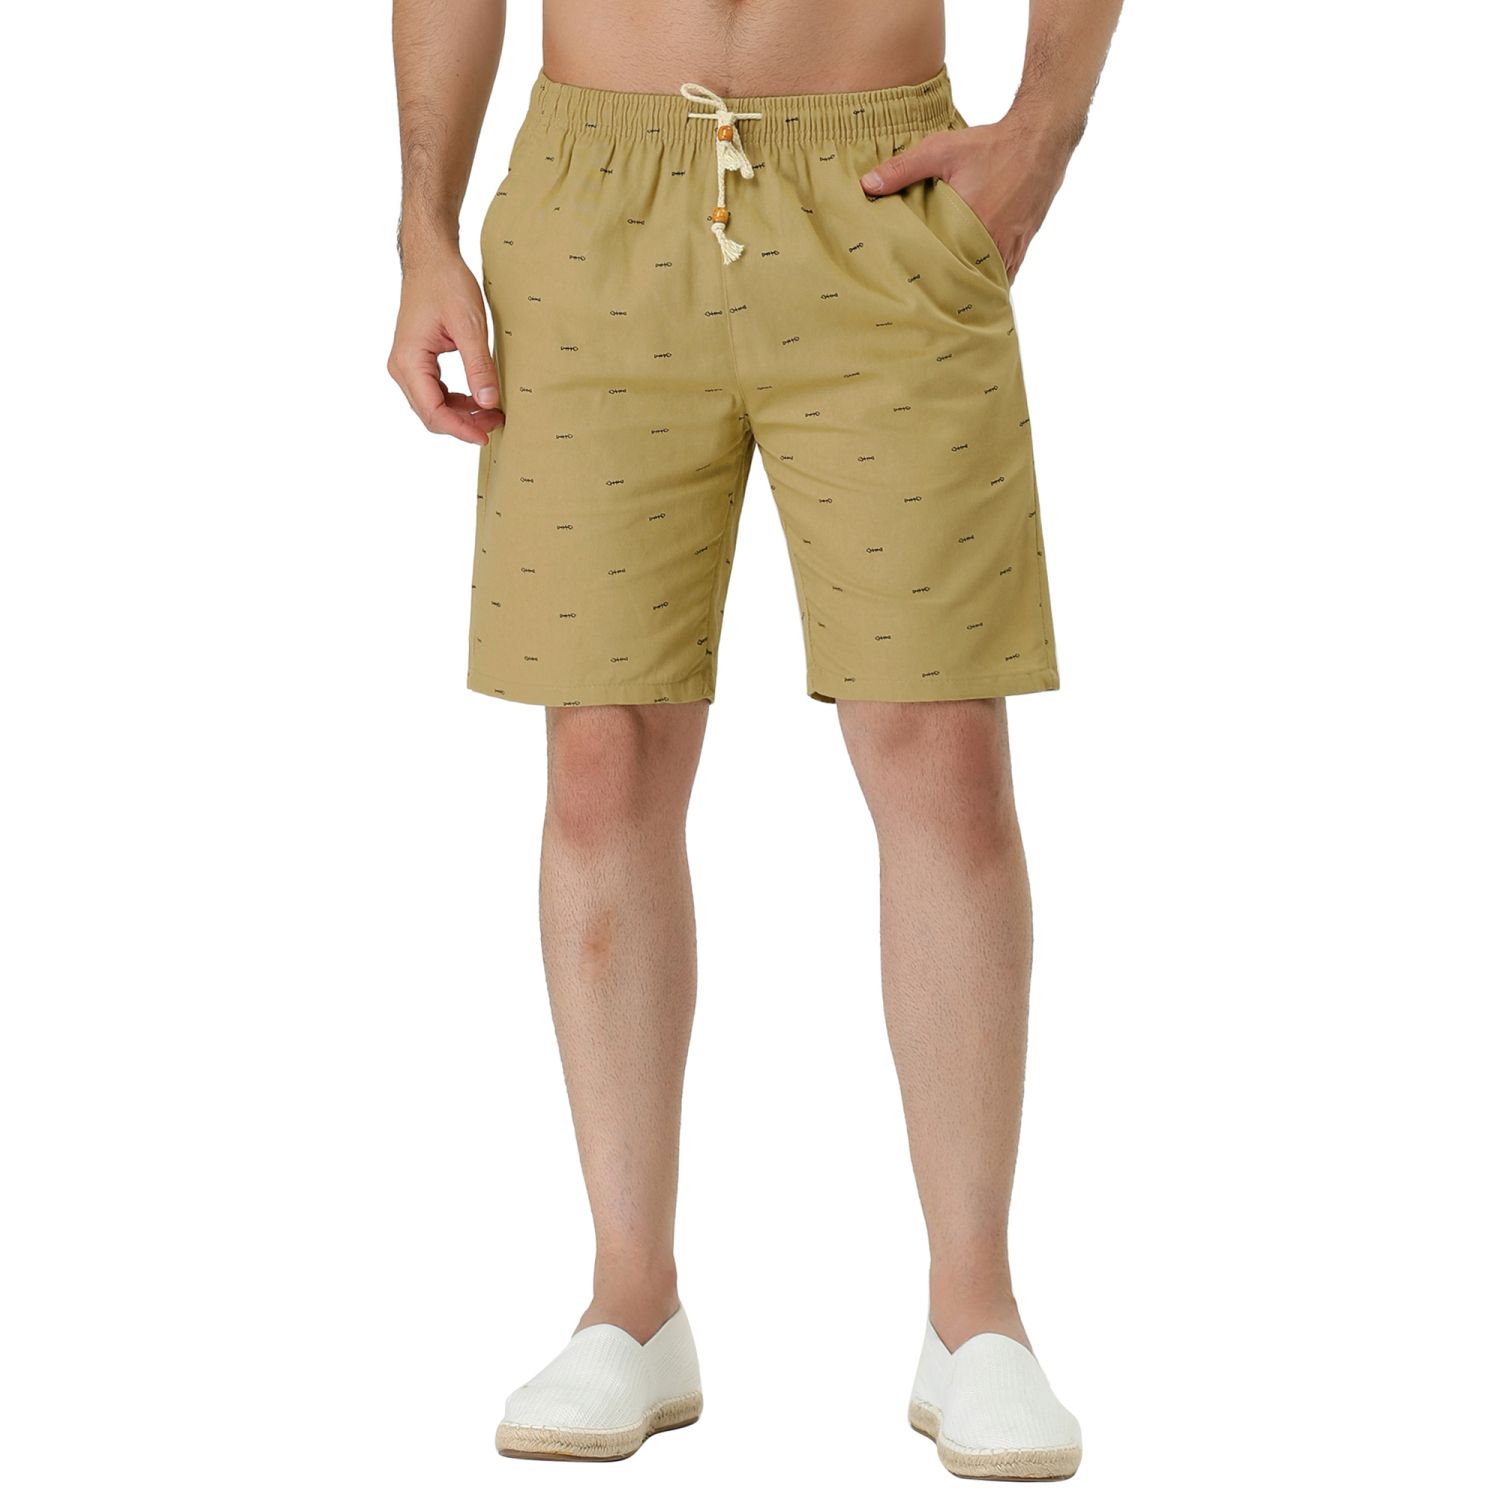 Men's Summer Holiday Drawstring Waist Mesh Lining Board Shorts